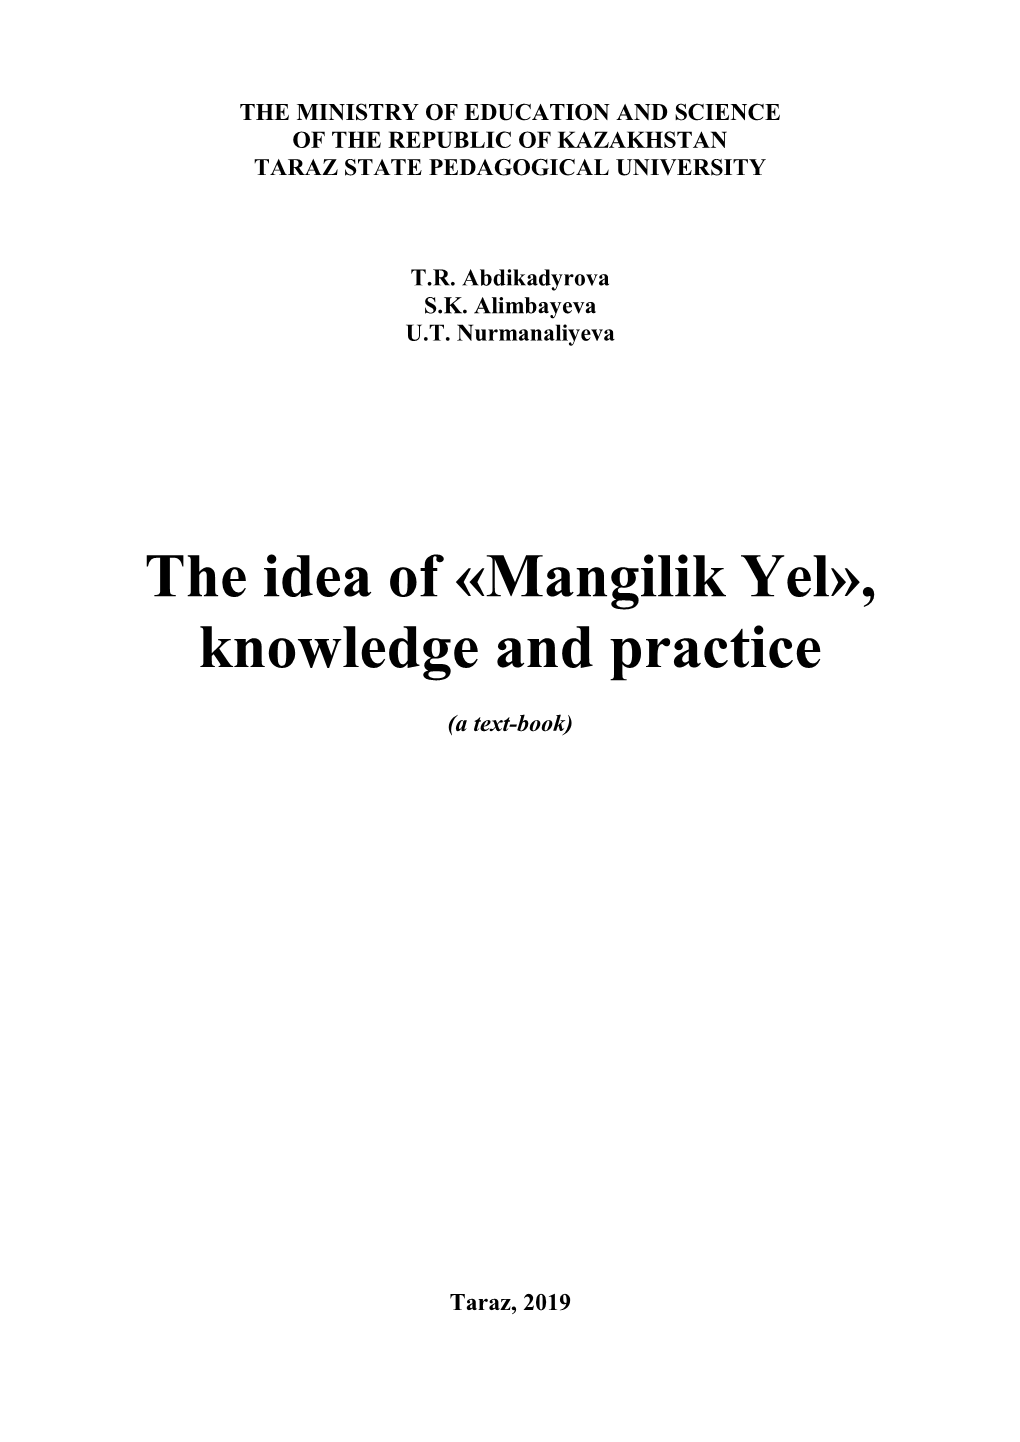 The Idea of «Mangilik Yel», Knowledge and Practice